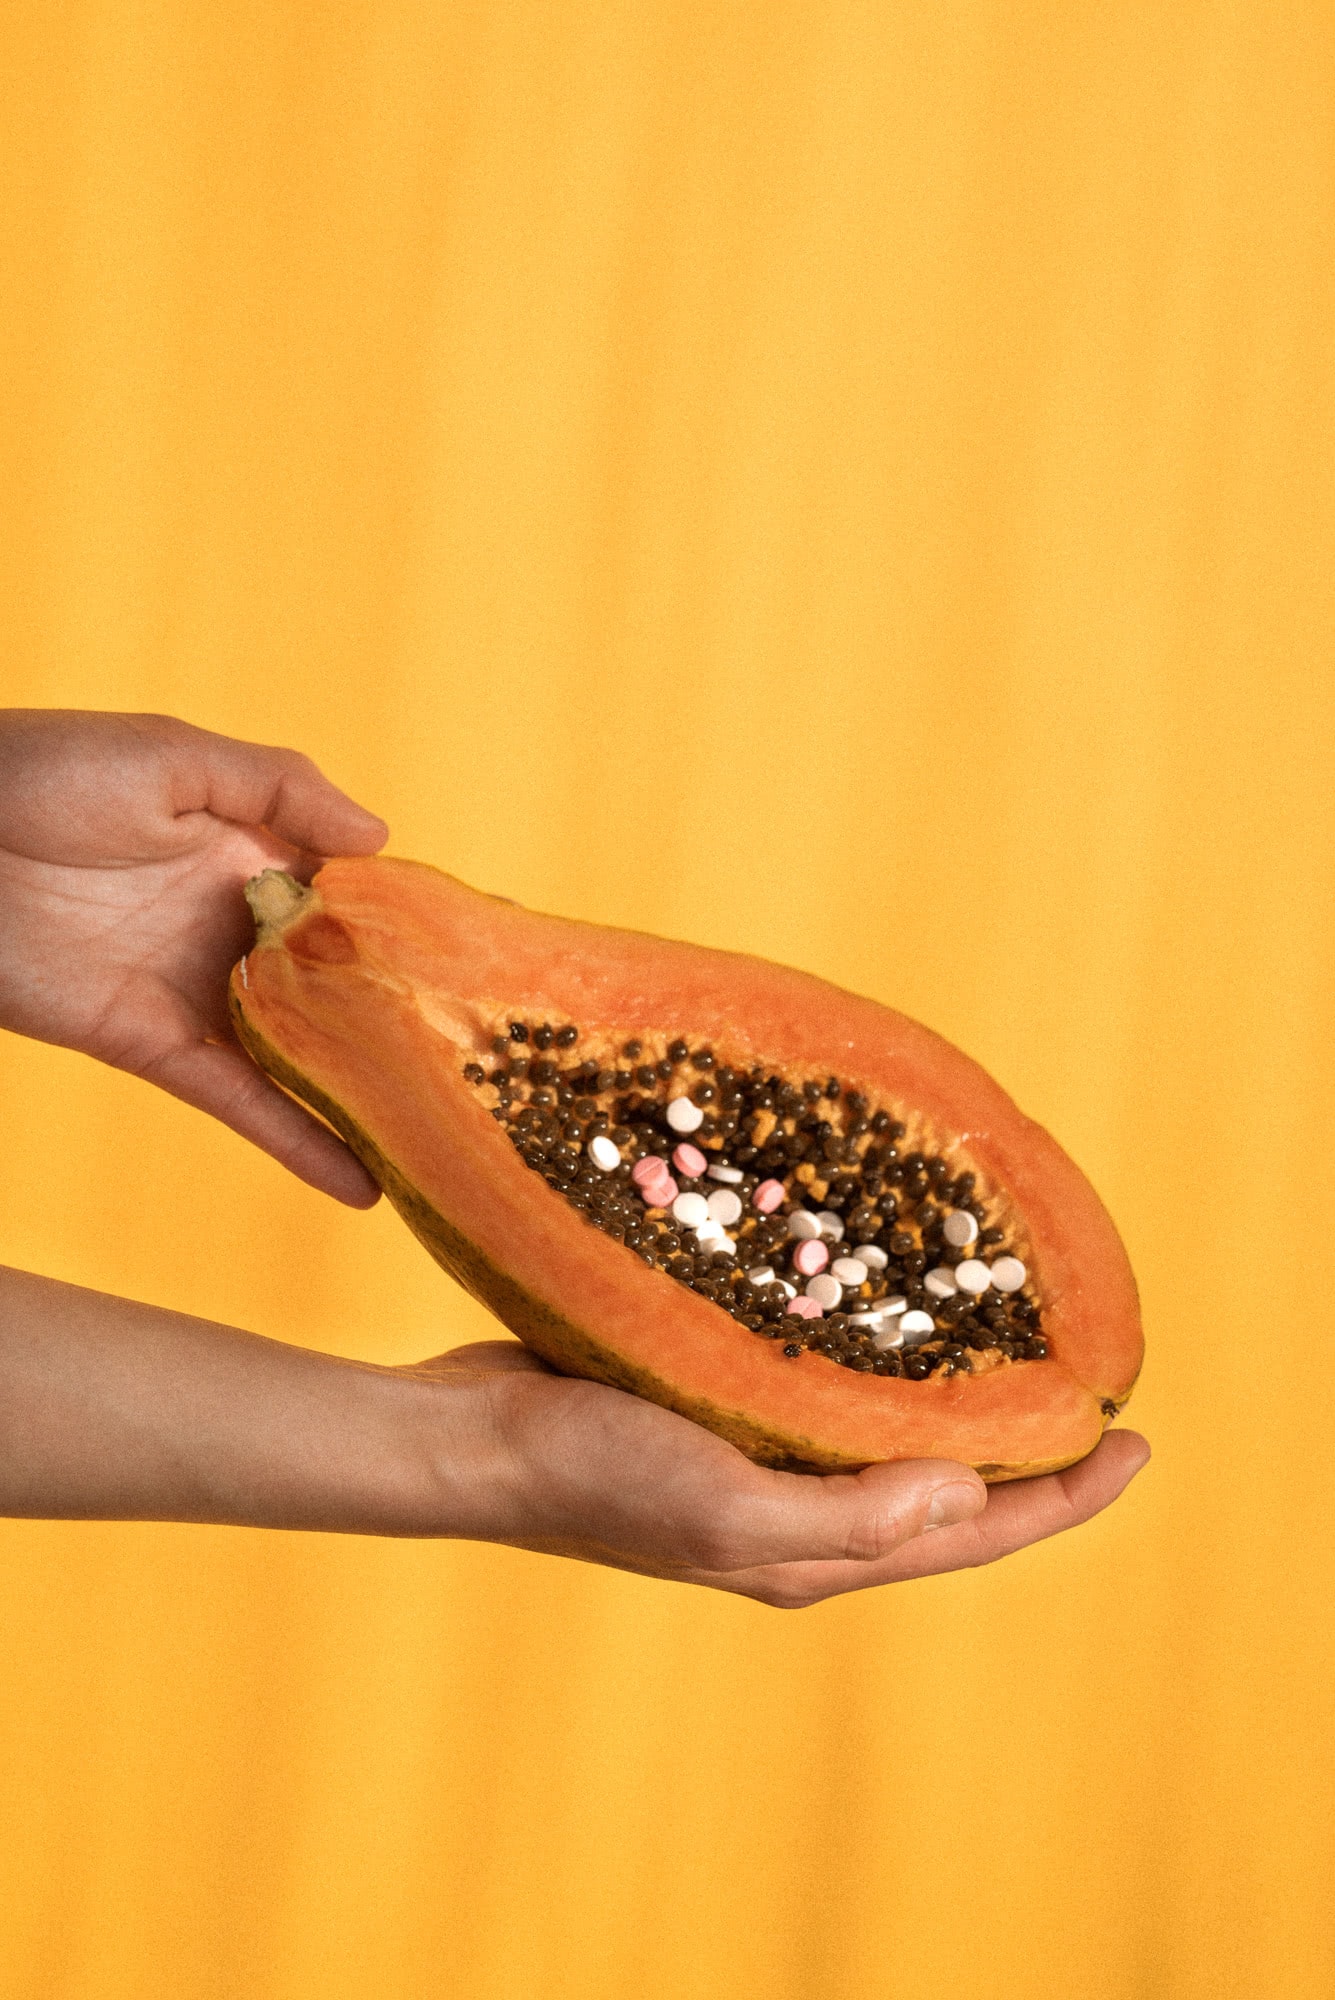 Kolorowe tabletki przeznaczone do aborcji farmakologicznej ułożone na owocu papai, który leży w rękach dziewczyny.